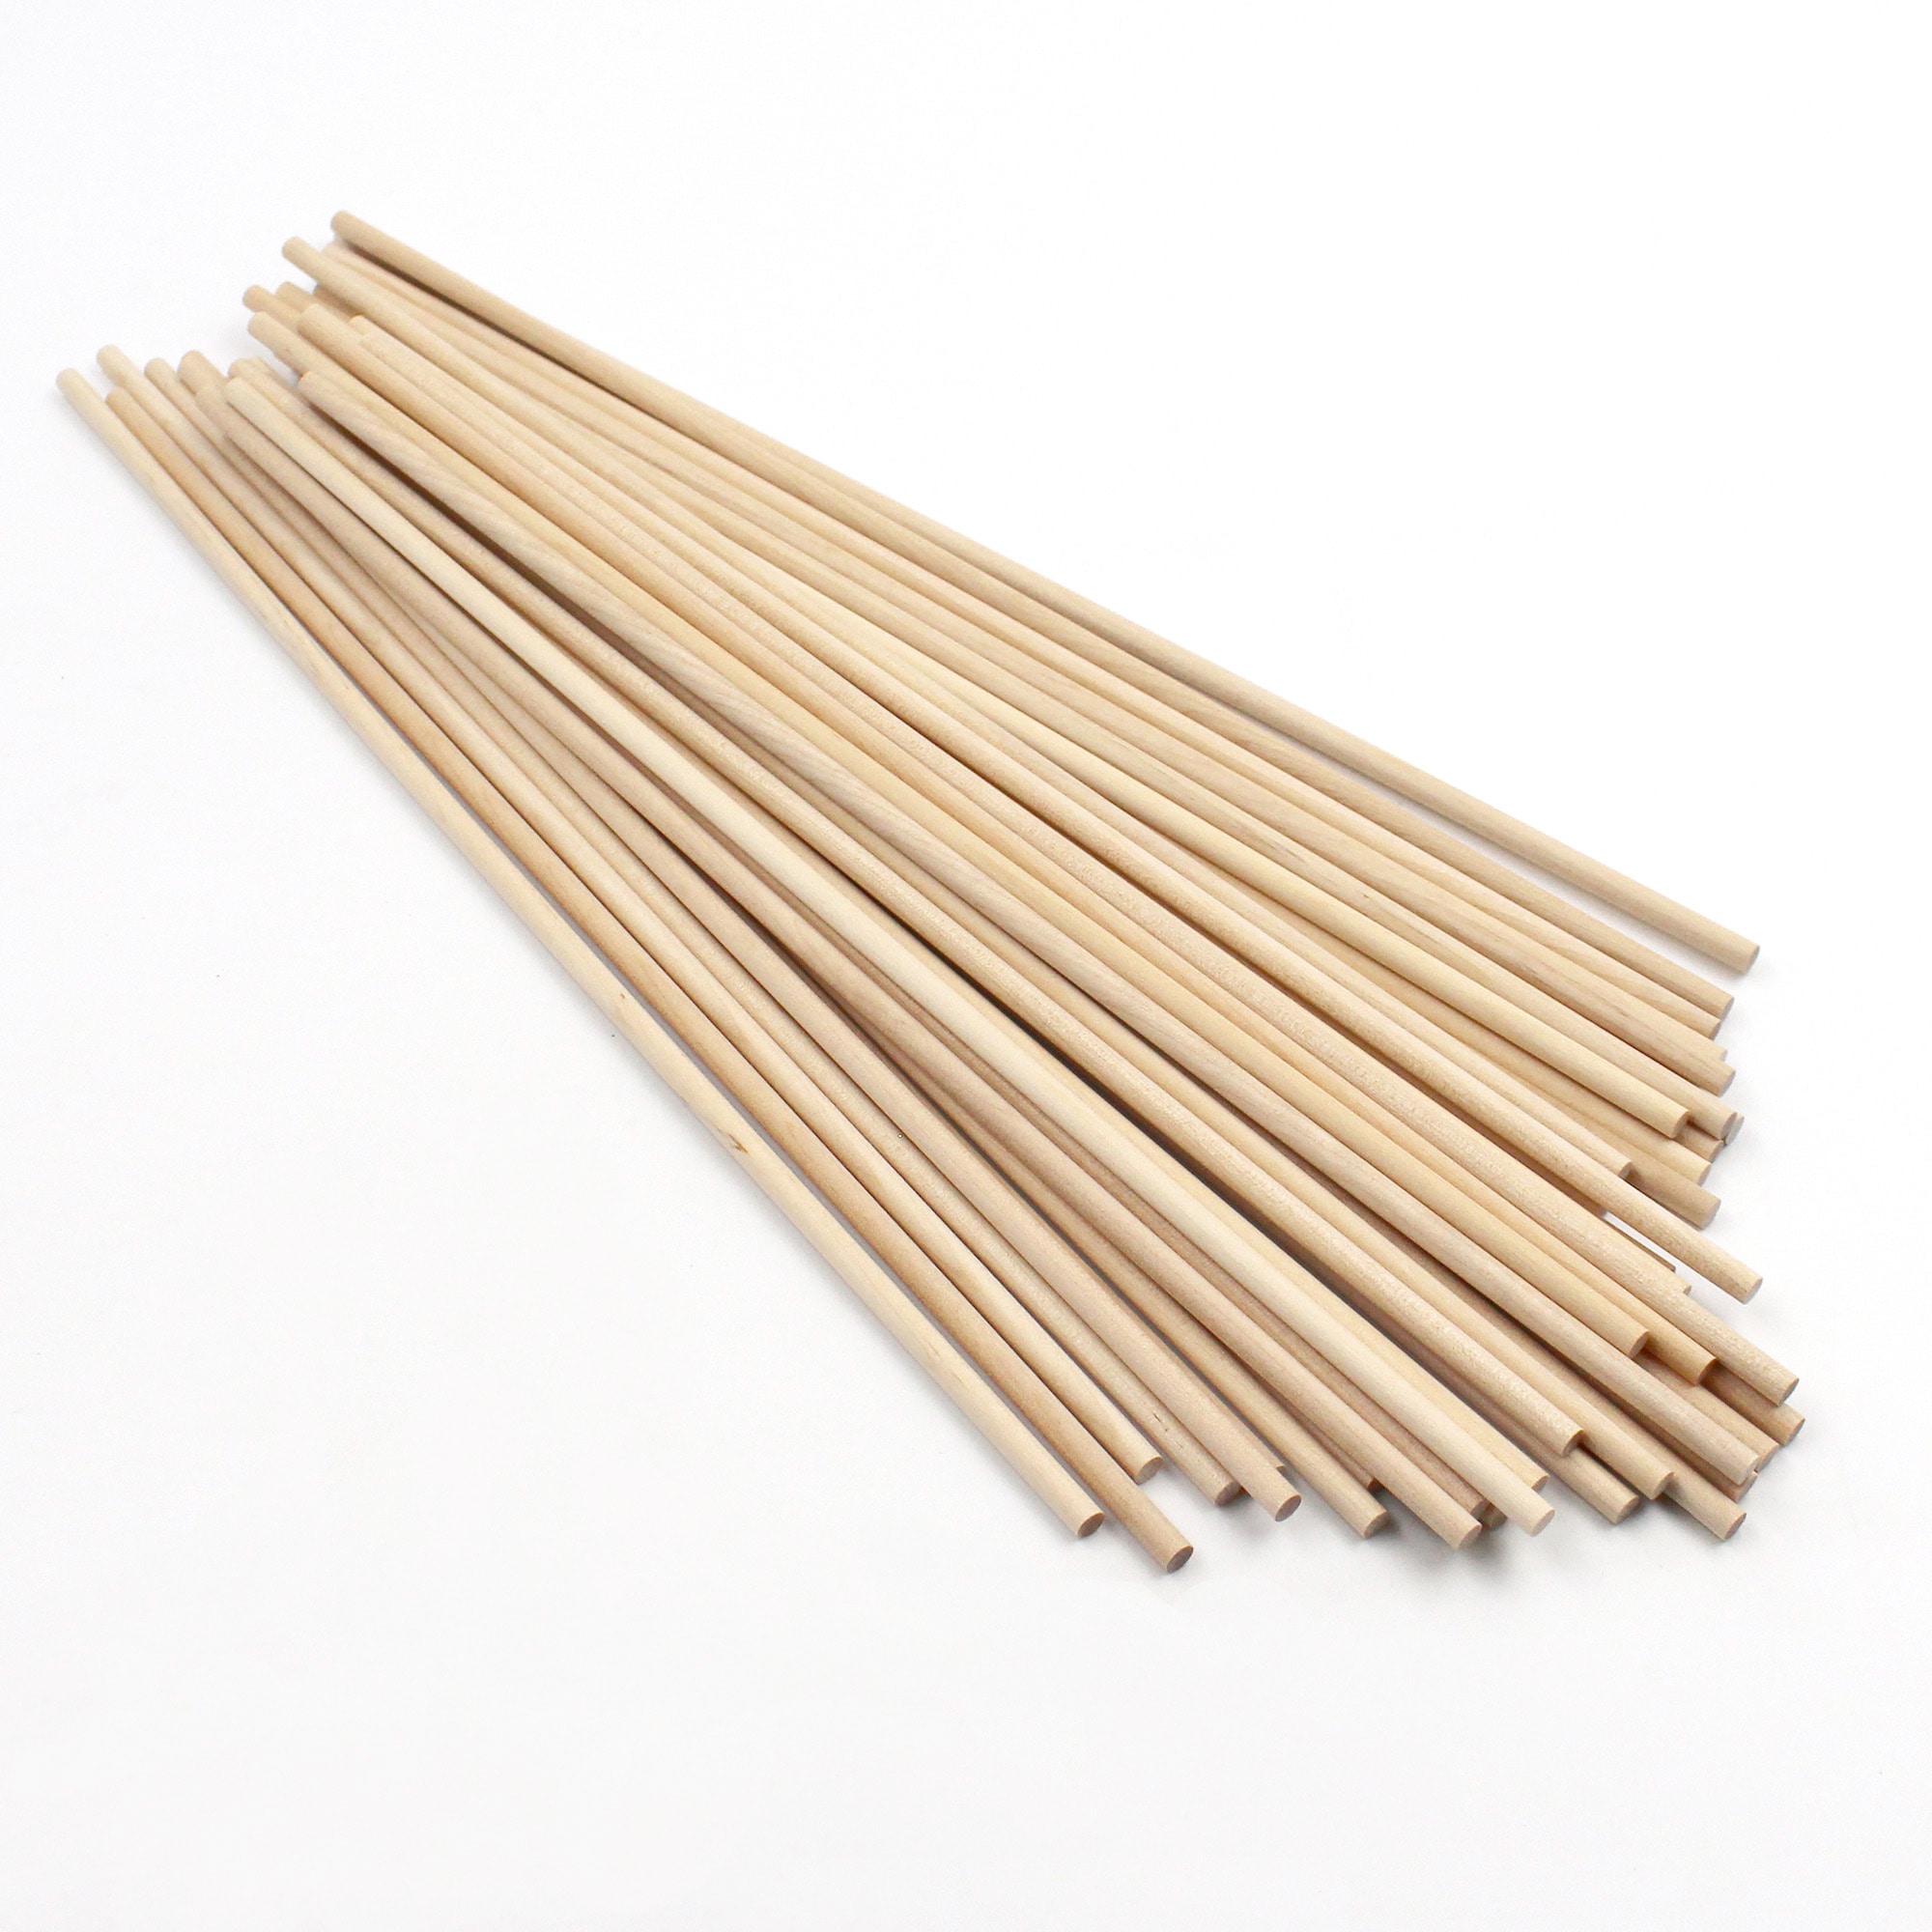 Creativity Street Wooden Dowel Rods - Pkg of 12, 3/8 x 36, BLICK Art  Materials